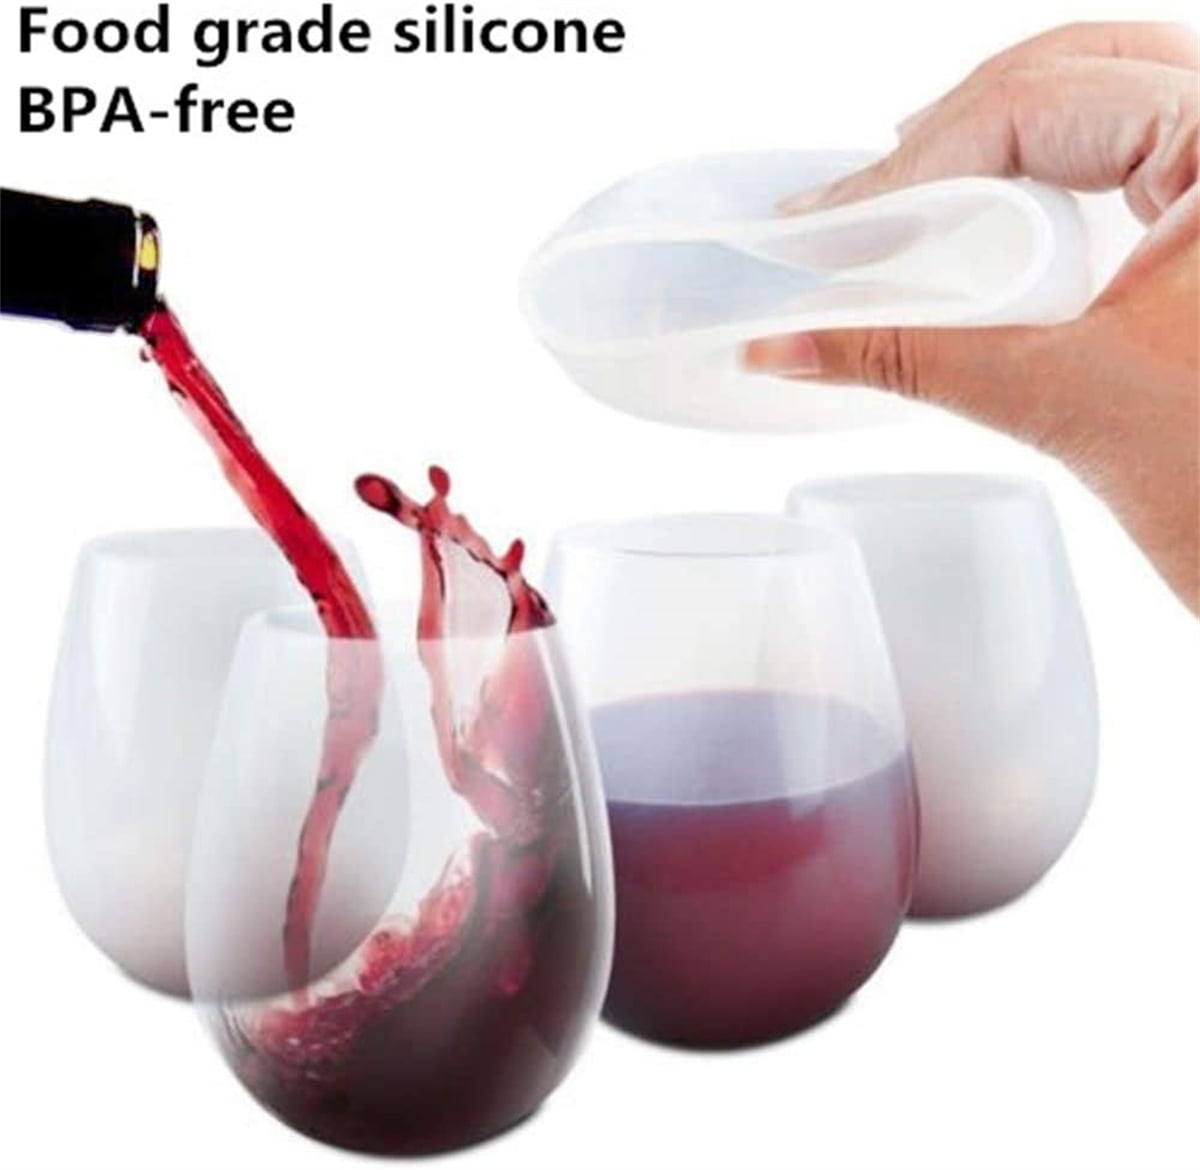 Portable Silicone Travel Wine Glasses – Uvida Shop: Boston's first Zero  Waste Store